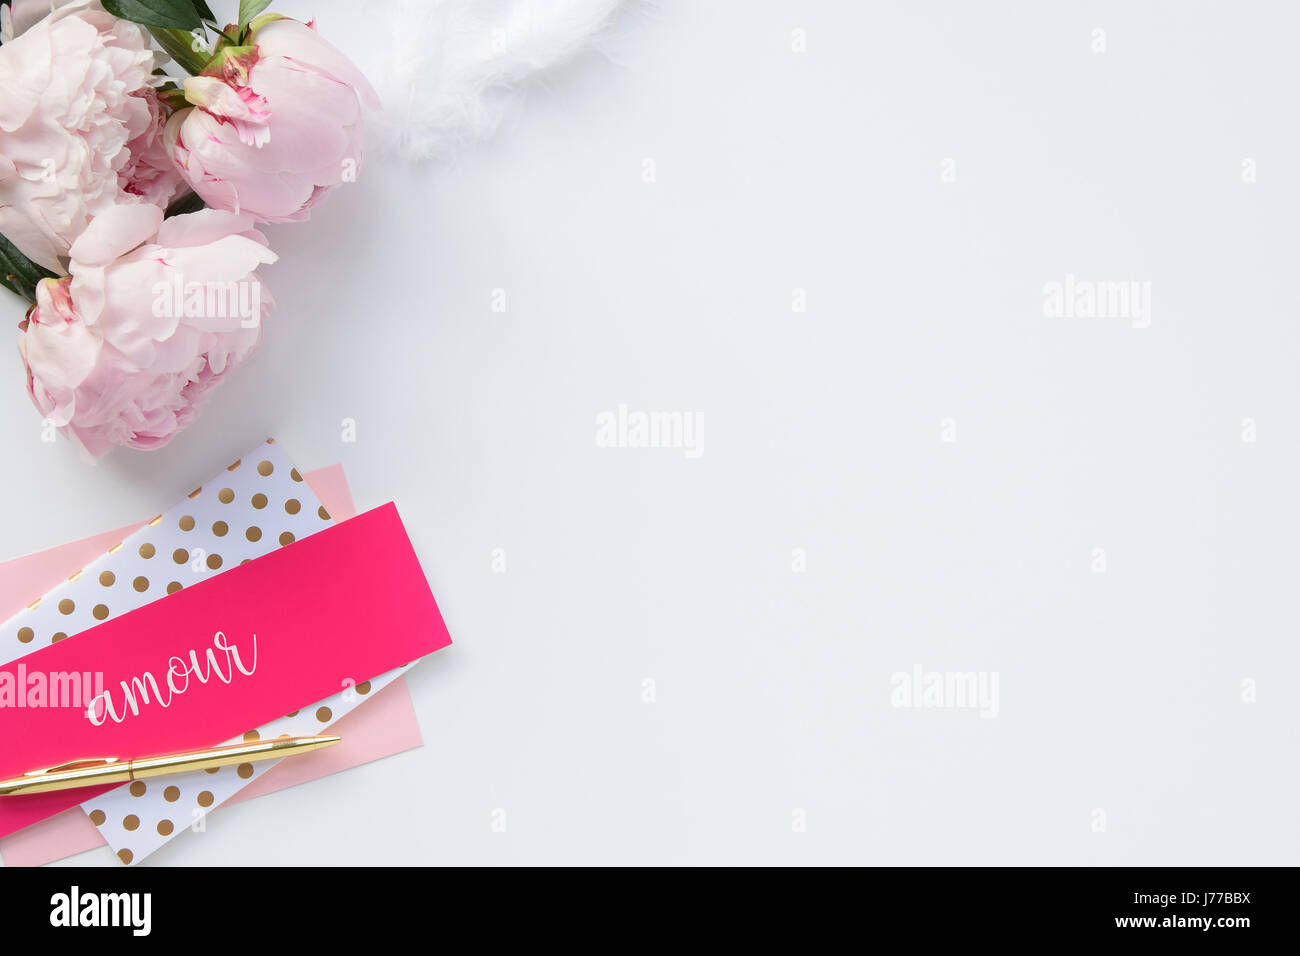 Hermoso, femenino laico plana con papelería y peonías, rosa y oro, por blog, maquetas, un montón de espacio en blanco Foto de stock